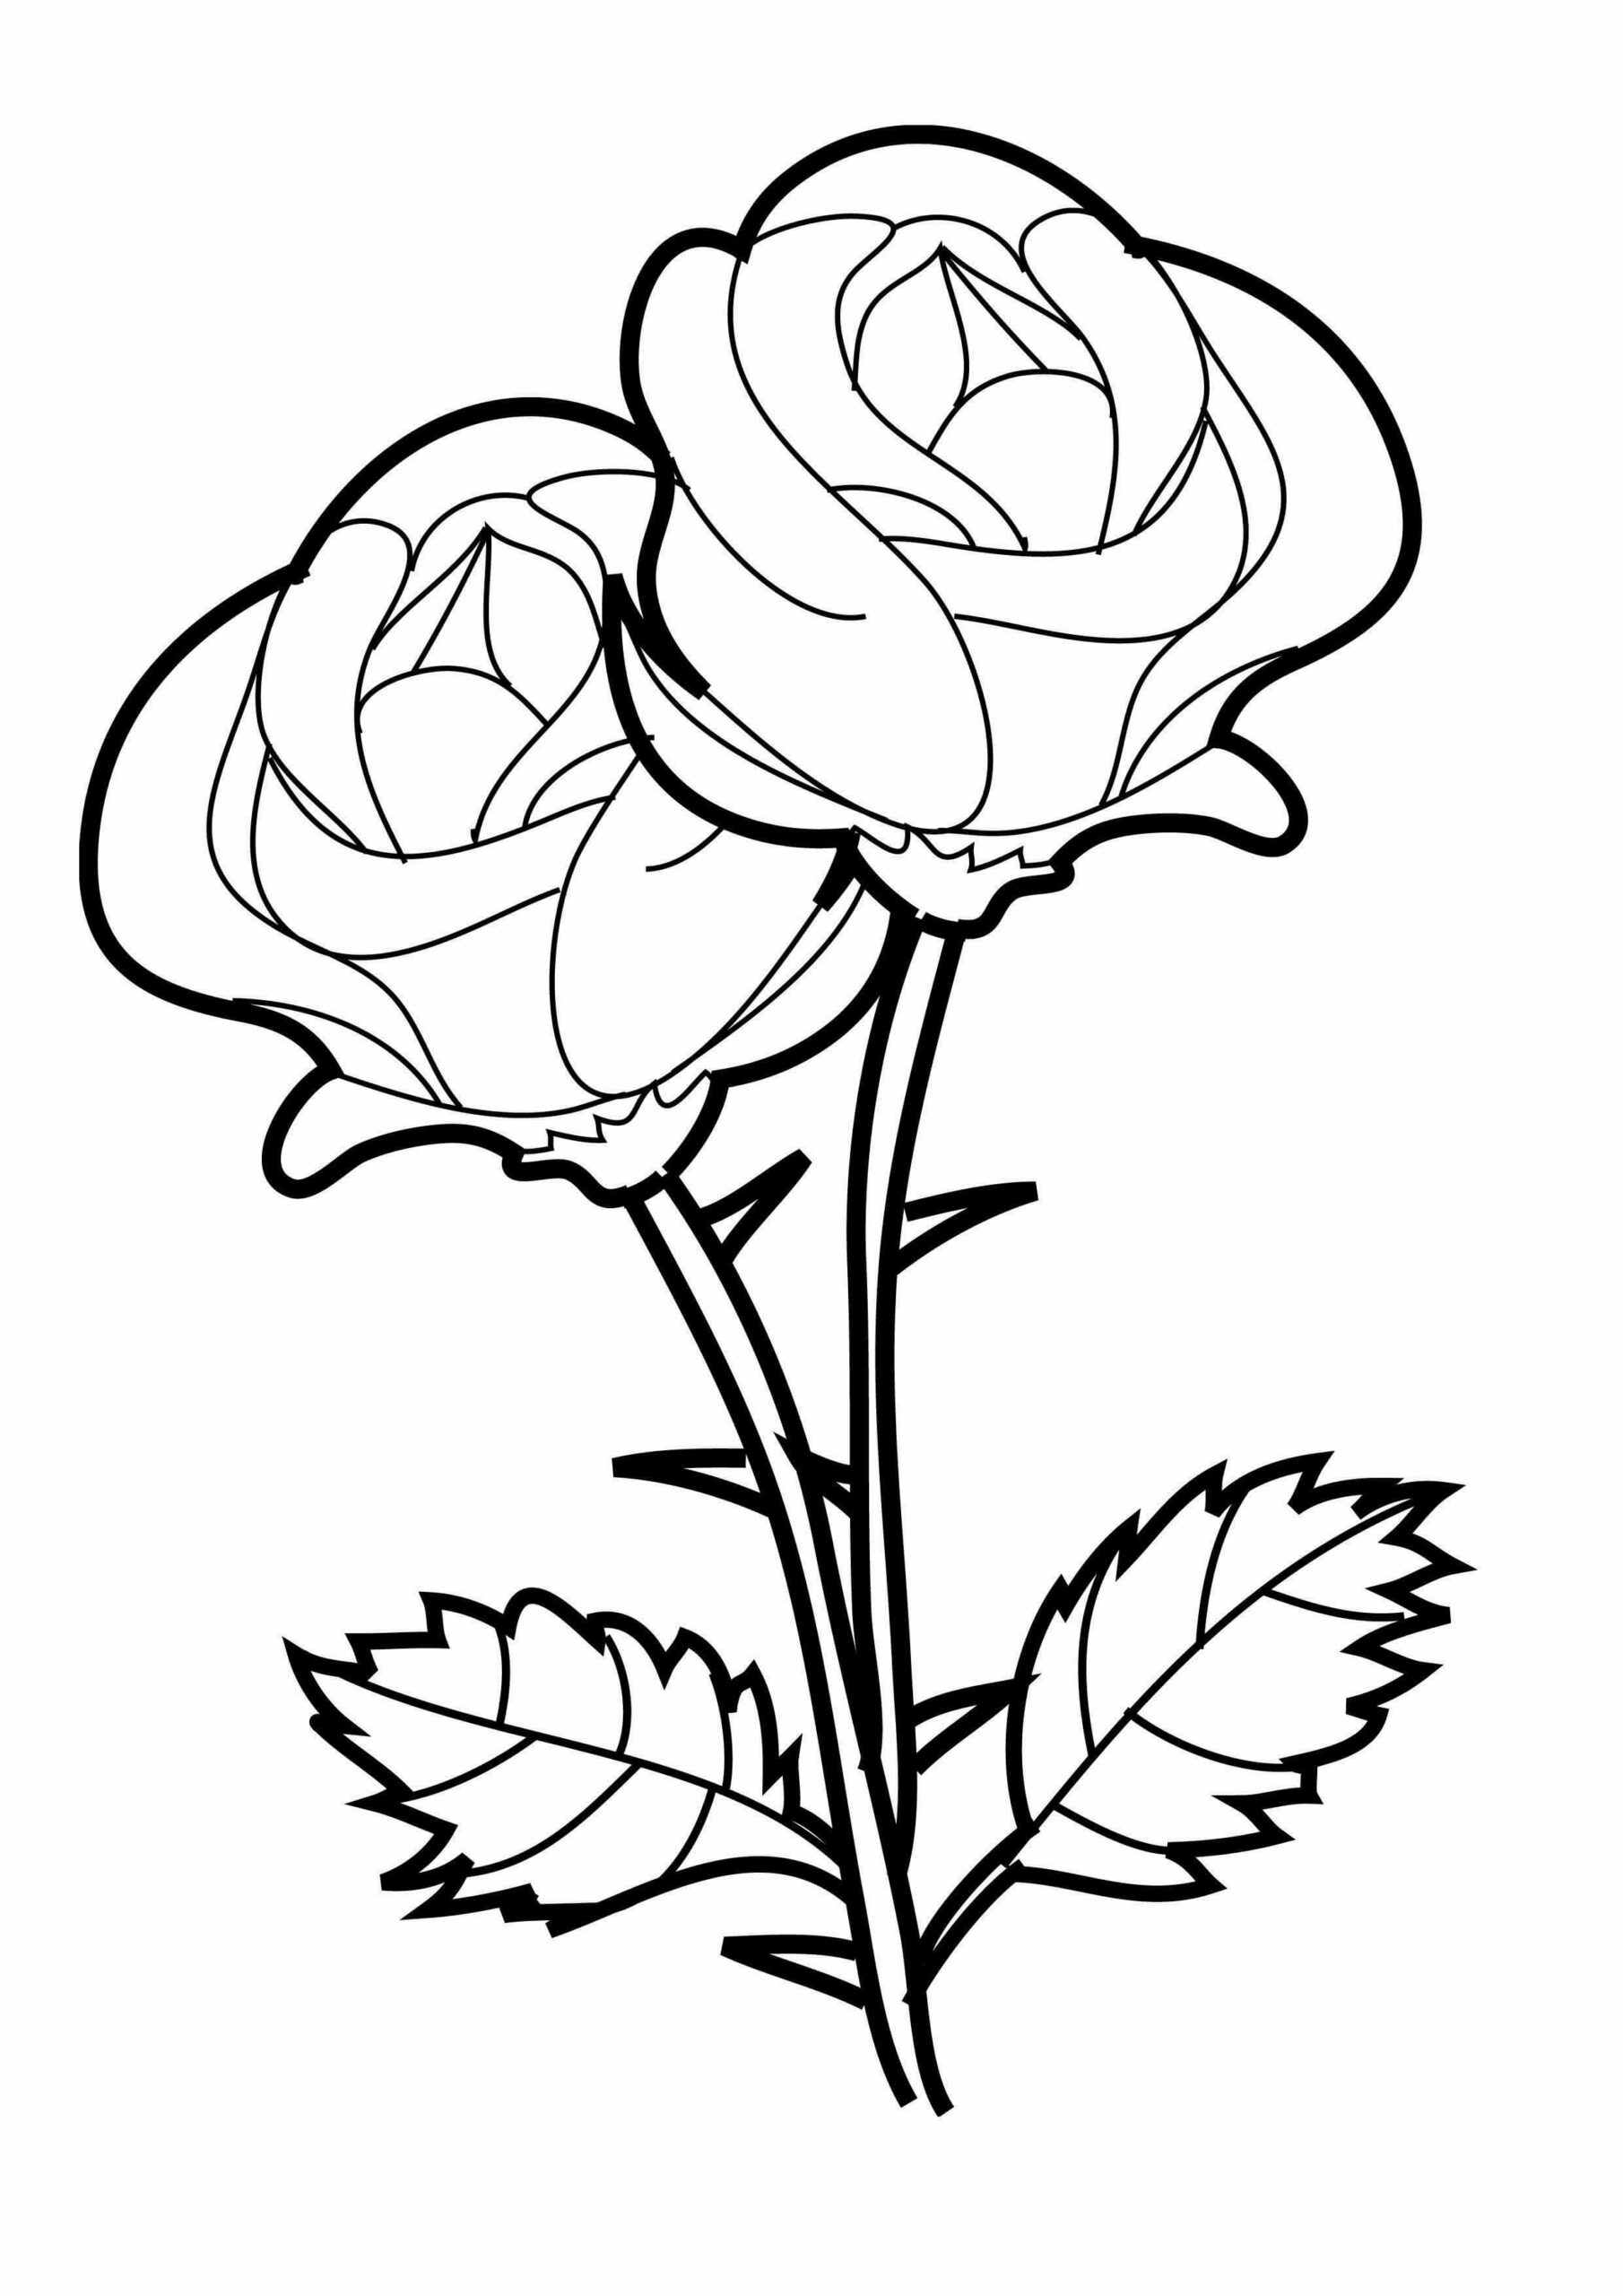 Ruusu coloring page